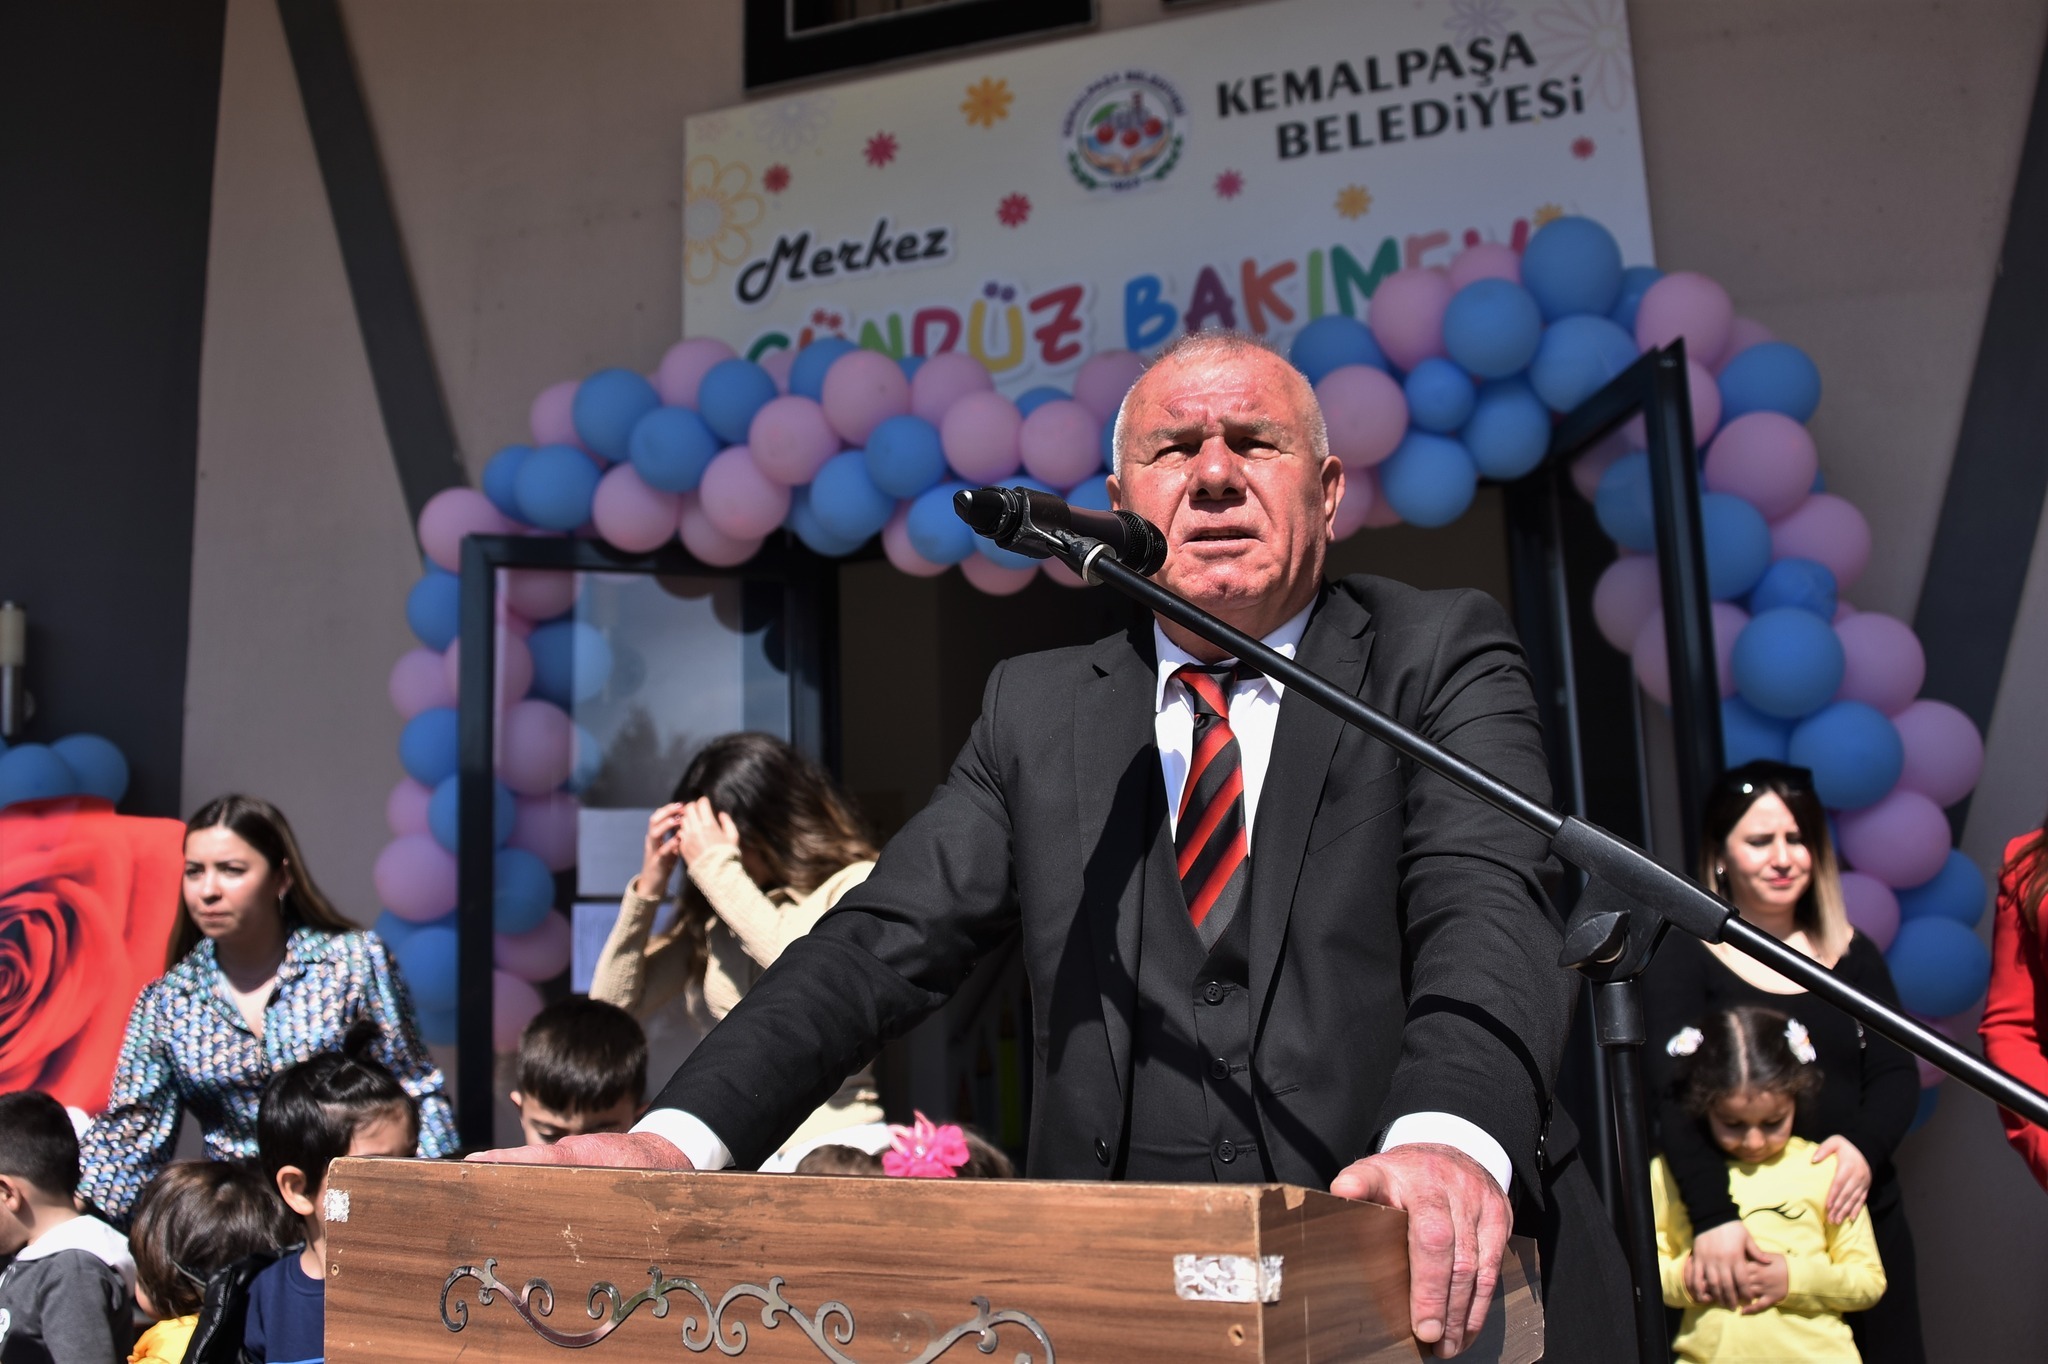 Kemalpaşa Belediyesi, Gündüz Bakımevi’nin (Kreş) 2’ncisini Kemalpaşa Merkez’de hizmete açtı.